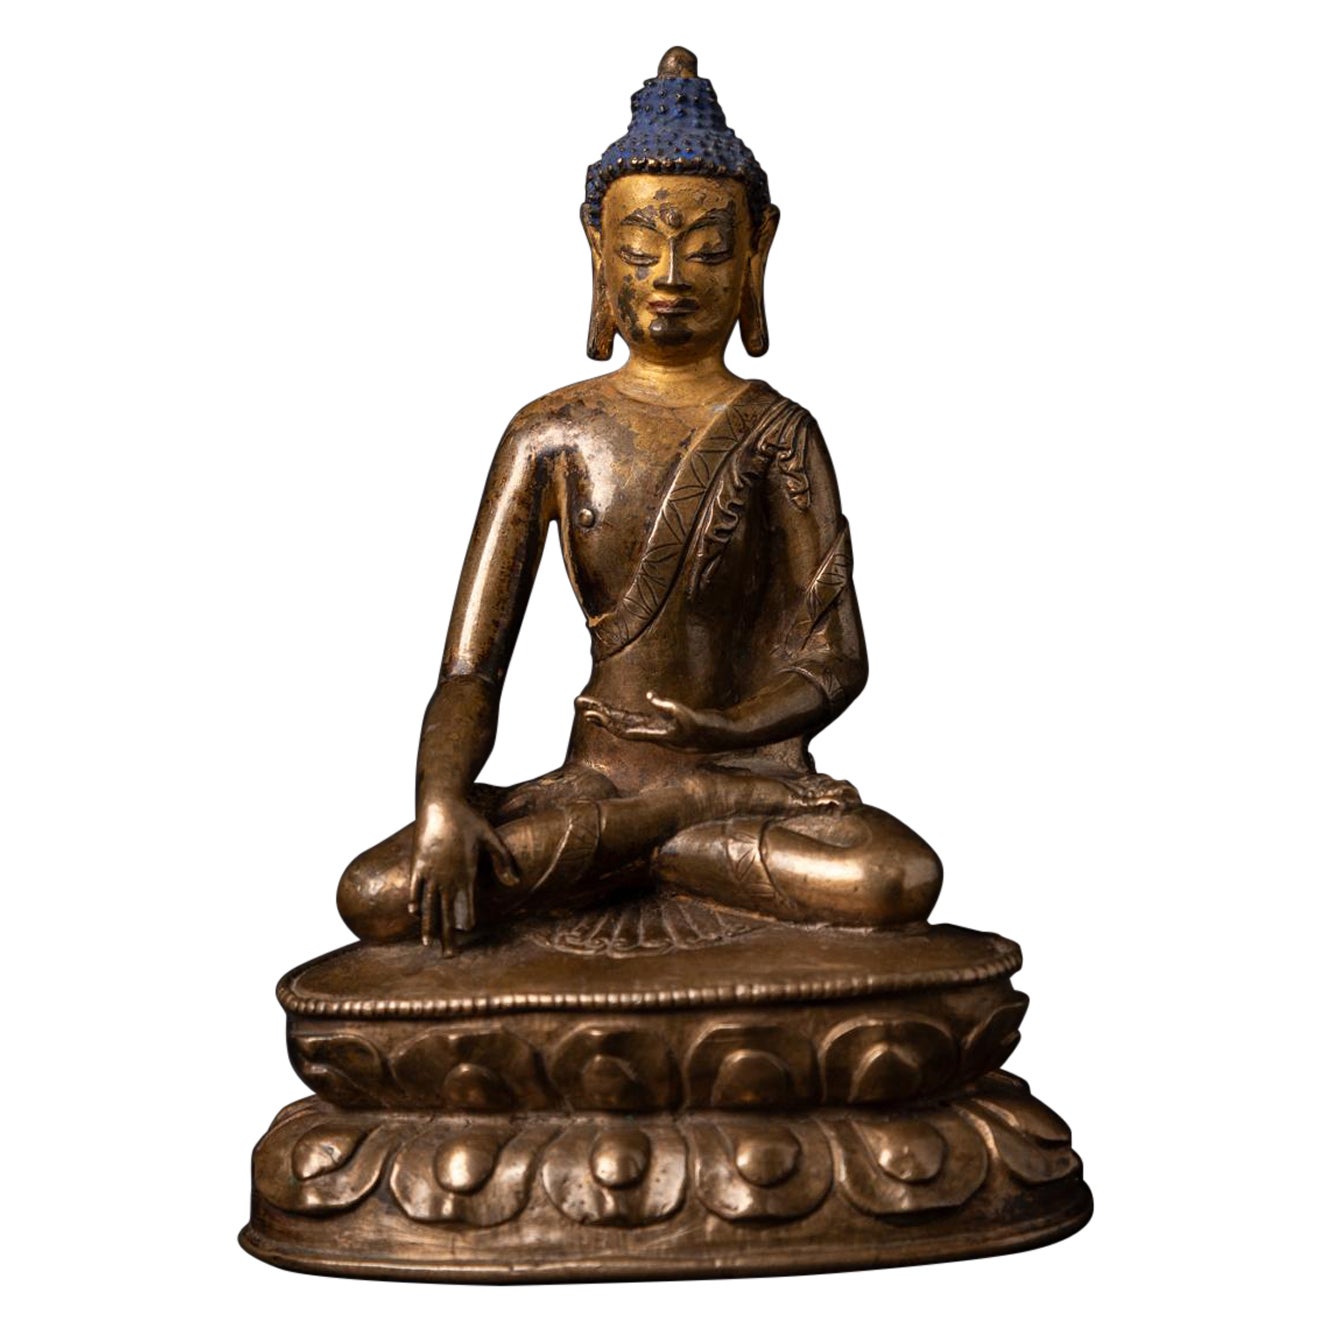 Sehr besondere antike tibetische Buddha-Statue aus dem 15. Jahrhundert in Bhumisparsha Mudra